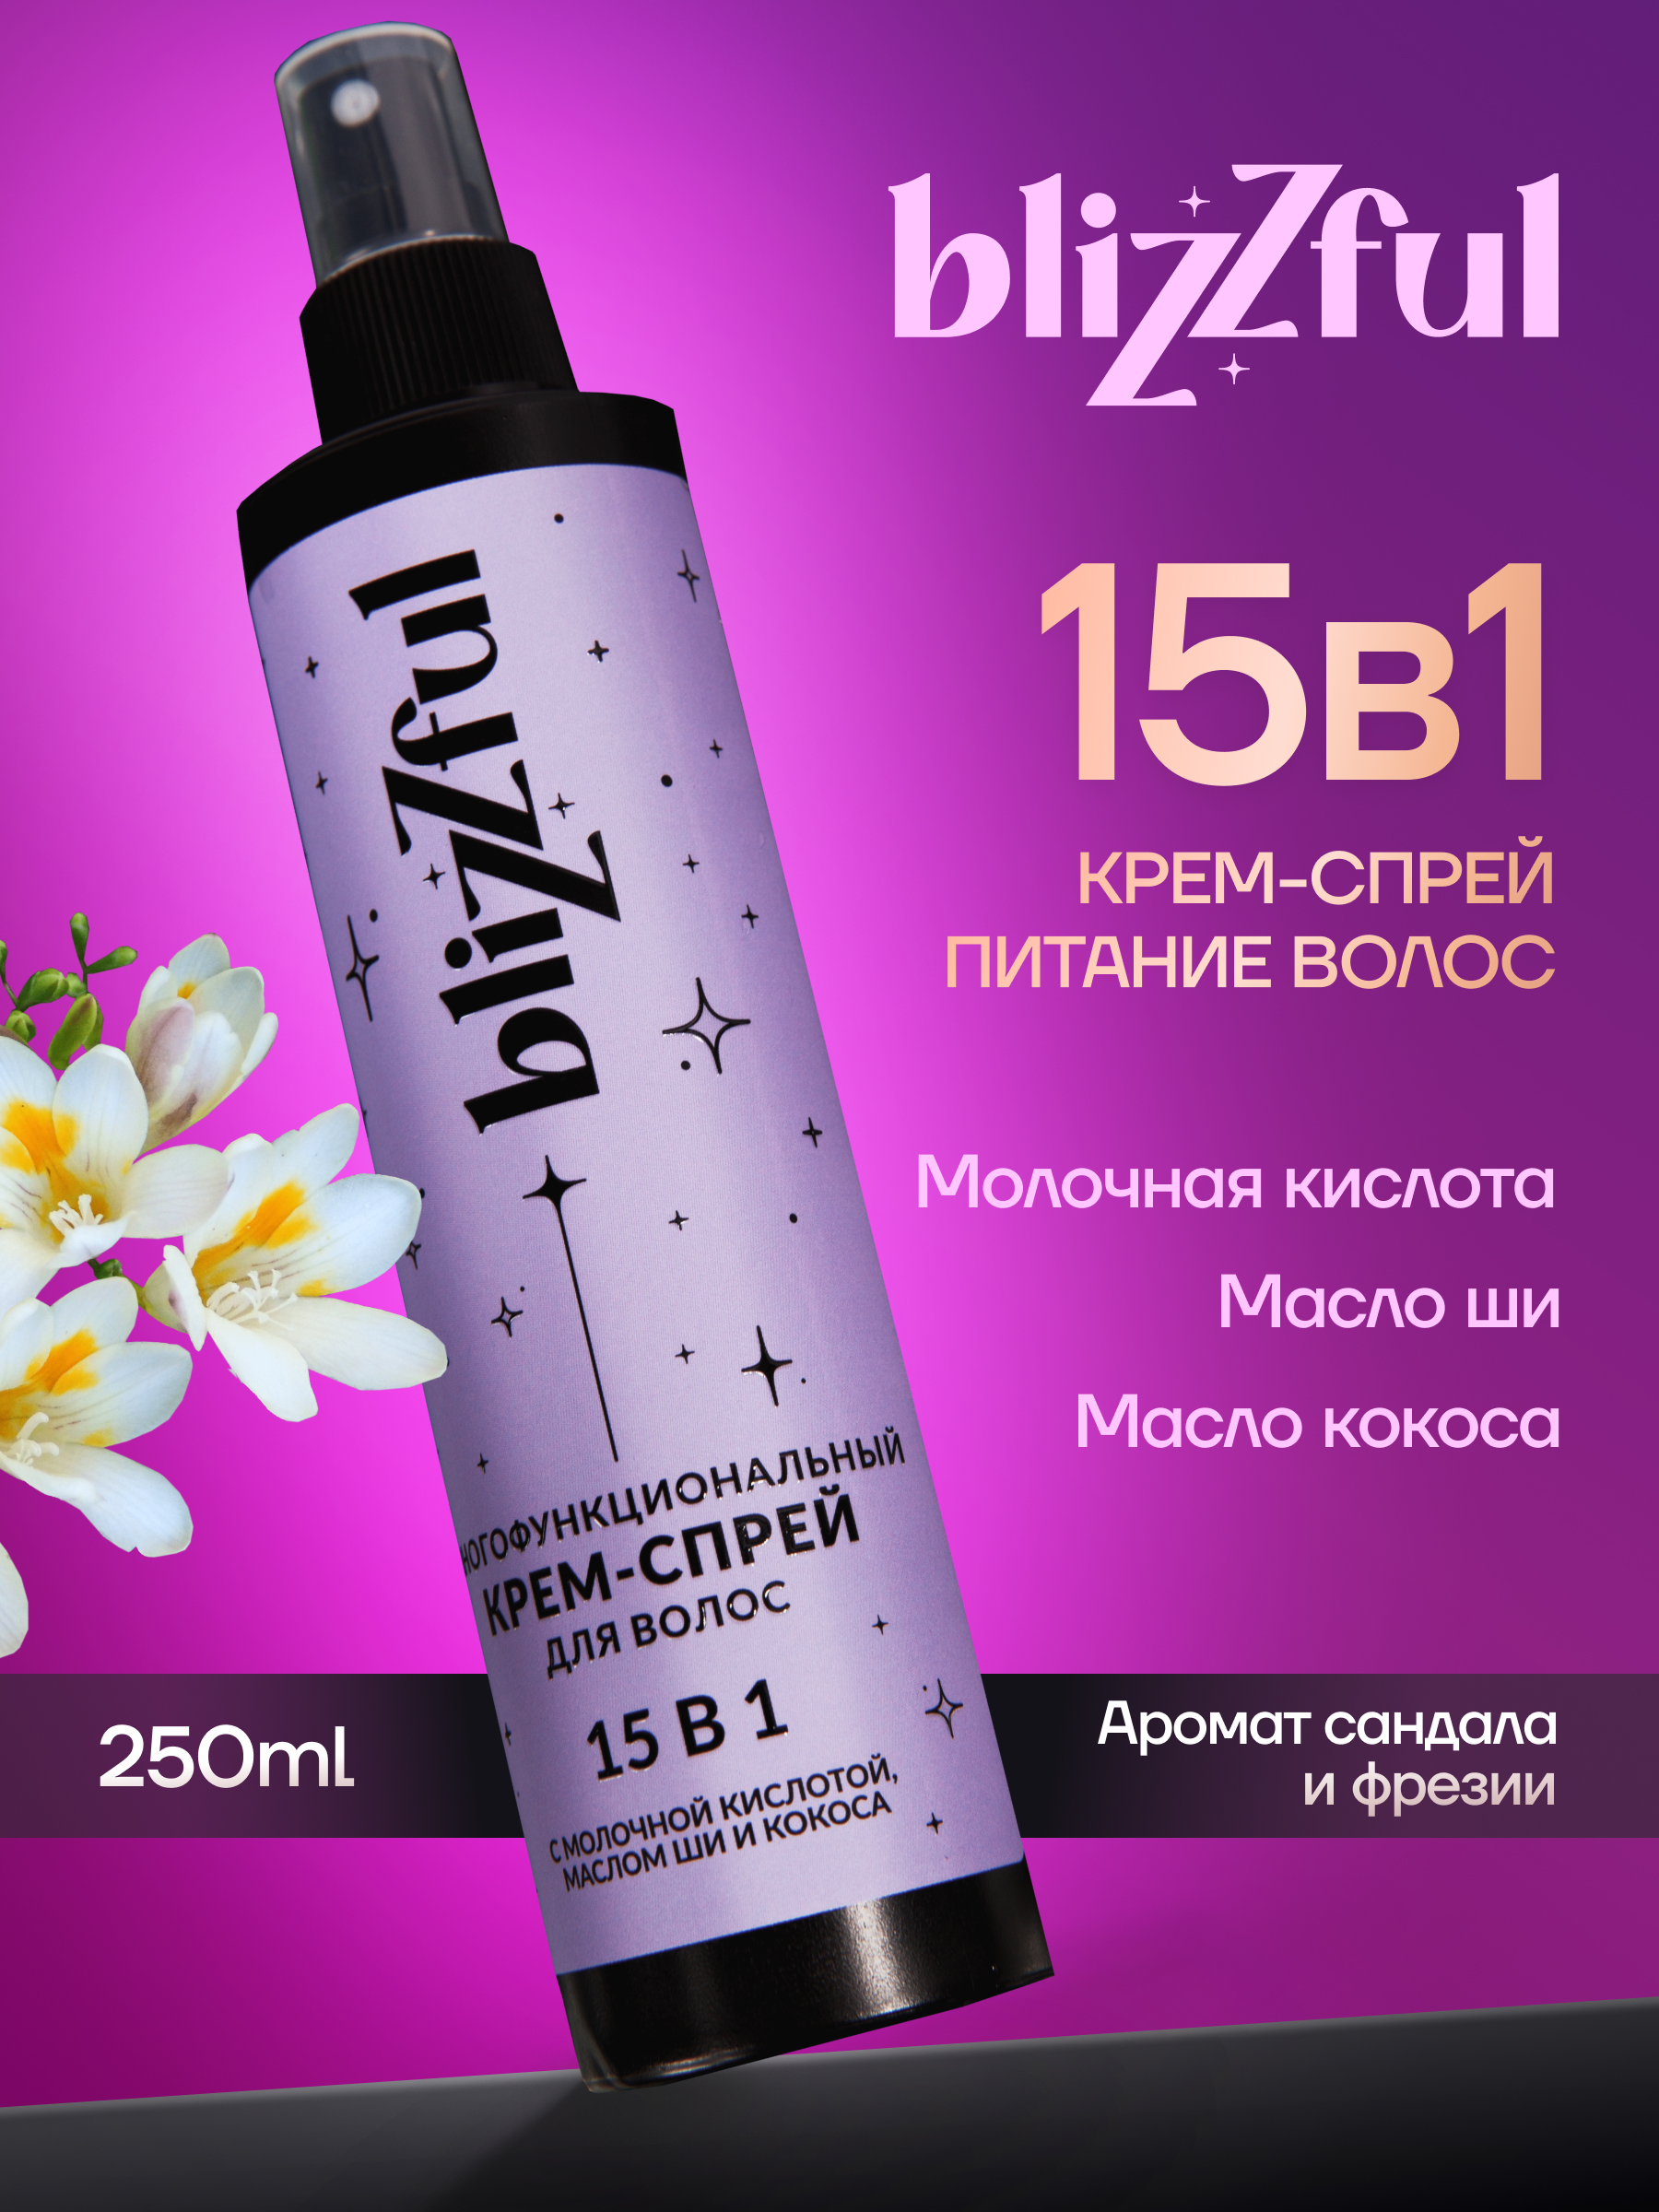 Многофункциональный крем-спрей Blizzful для волос 15 в 1 250мл спрей укрепление термозащита 250мл